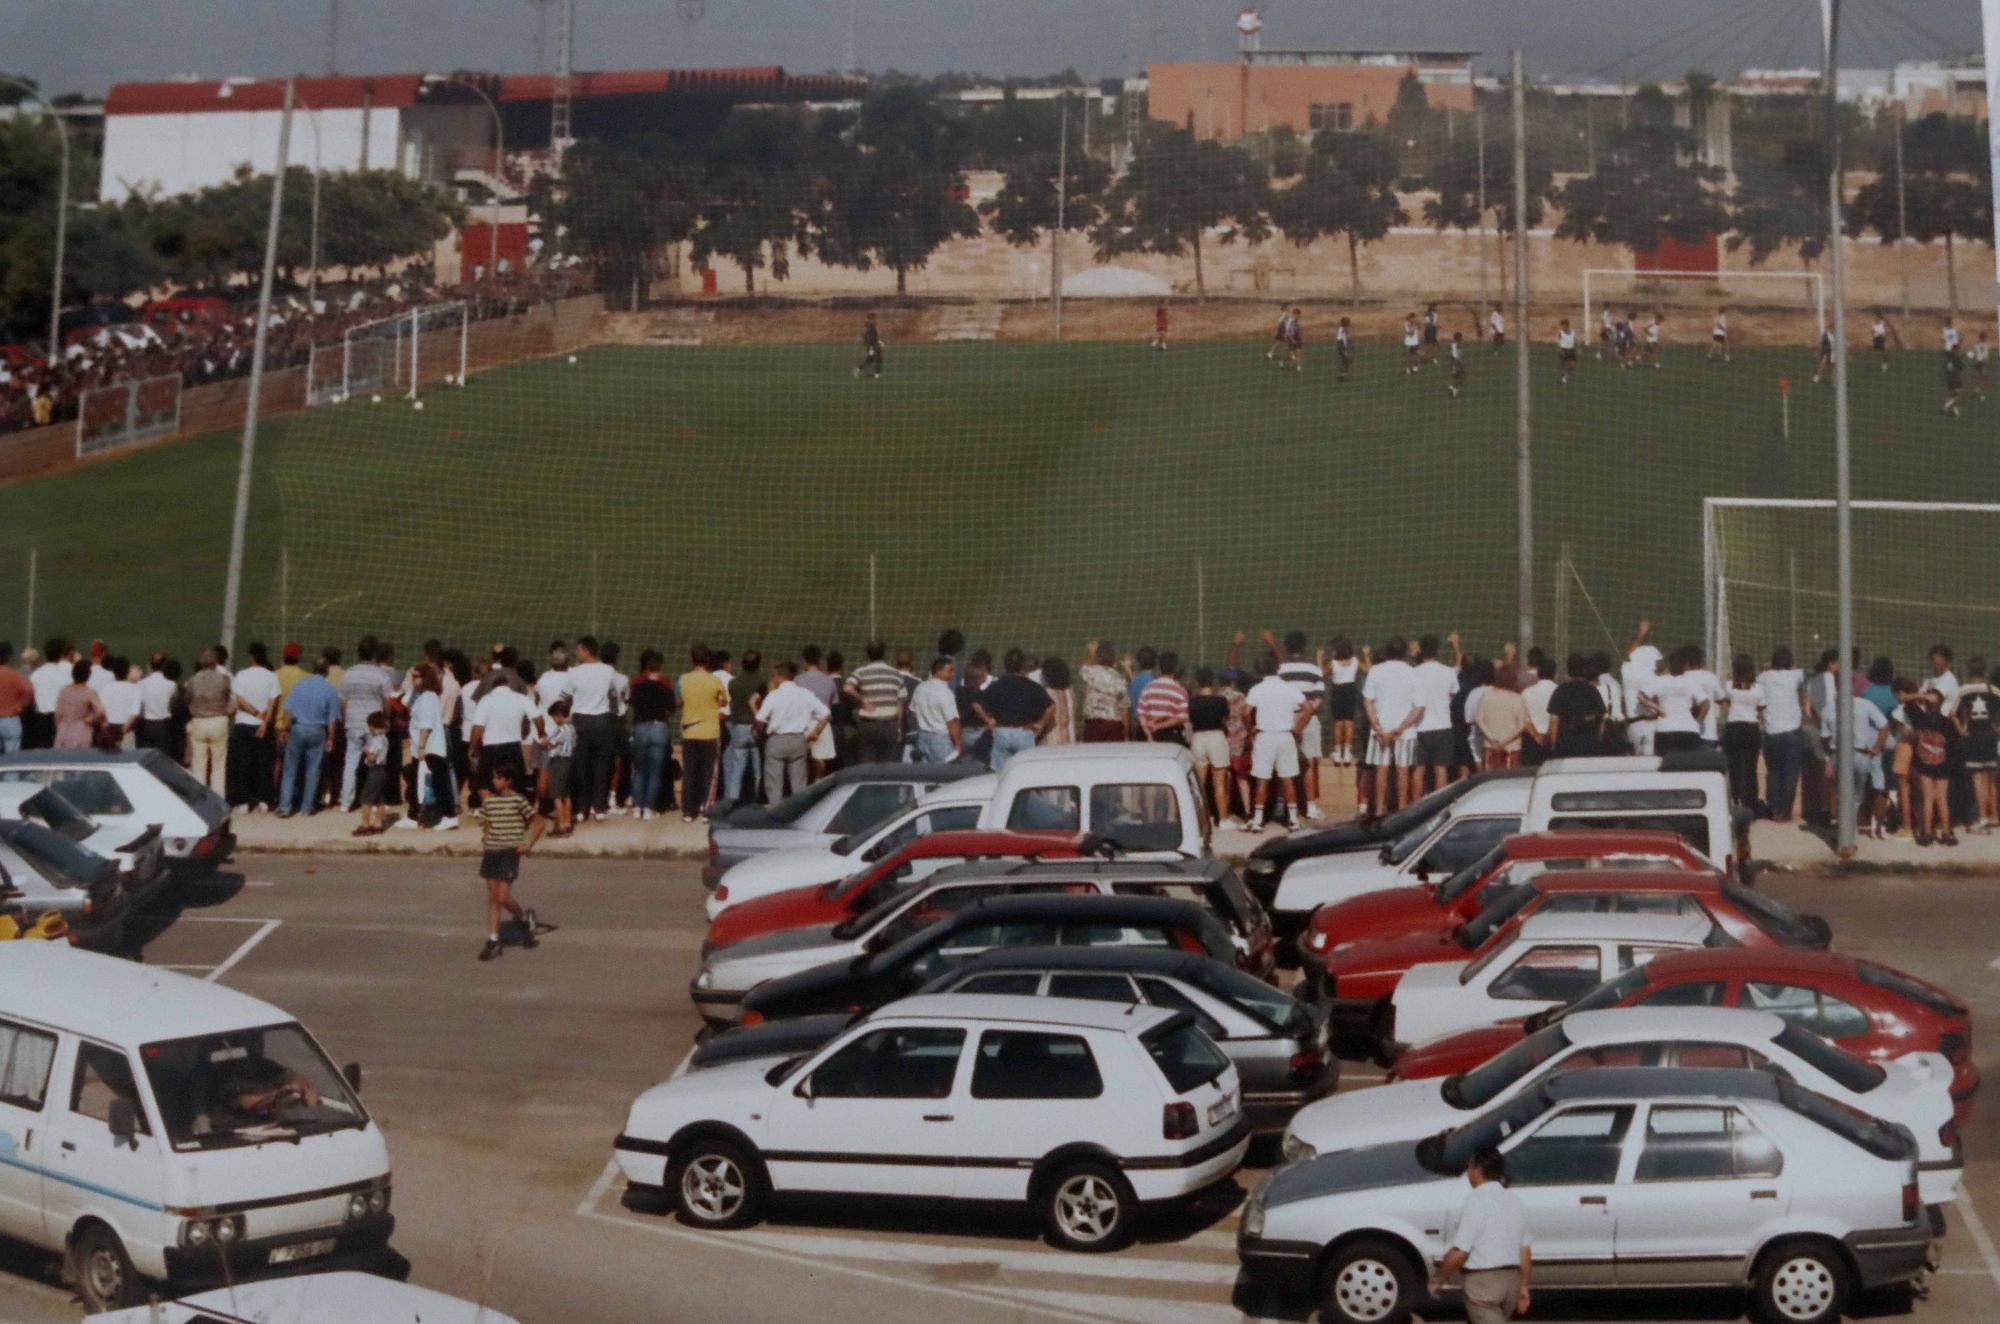 La Ciudad Deportiva de Paterna cuando era un lugar de peregrinaje valencianista